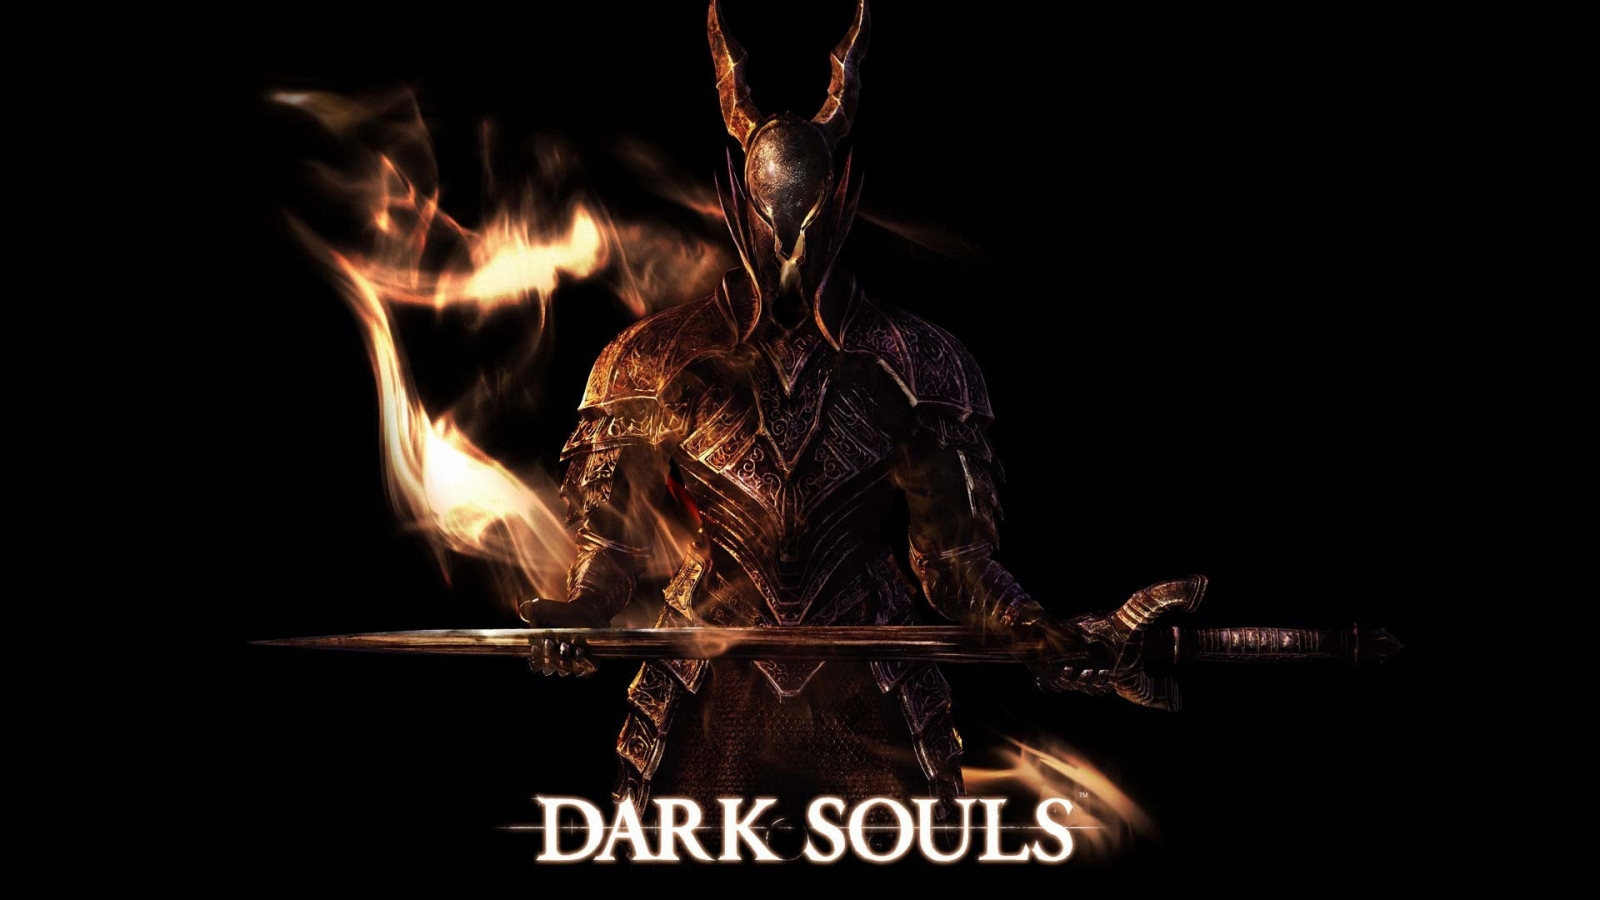 Dark Souls Art for 1600 x 900 HDTV resolution